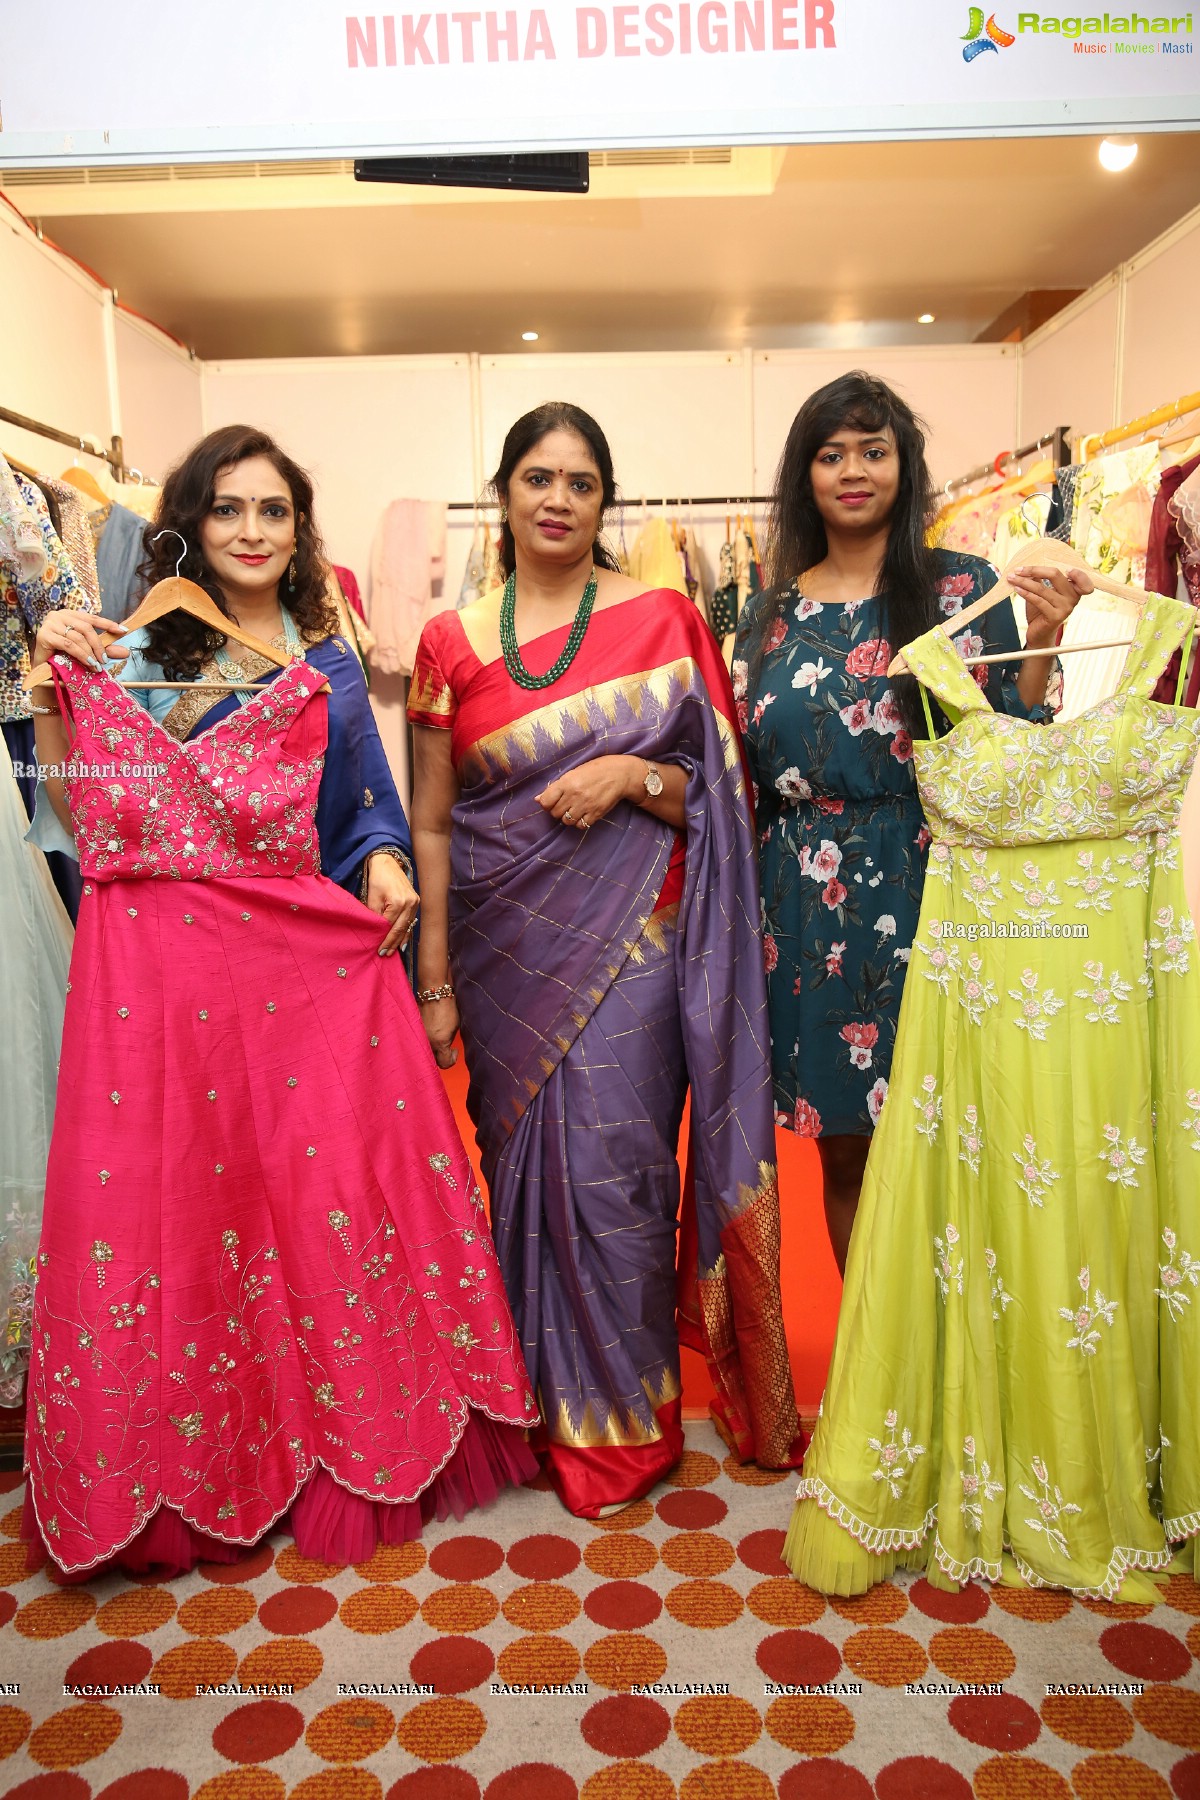 Rufflez Exhibition Kicks Off at Taj Krishna